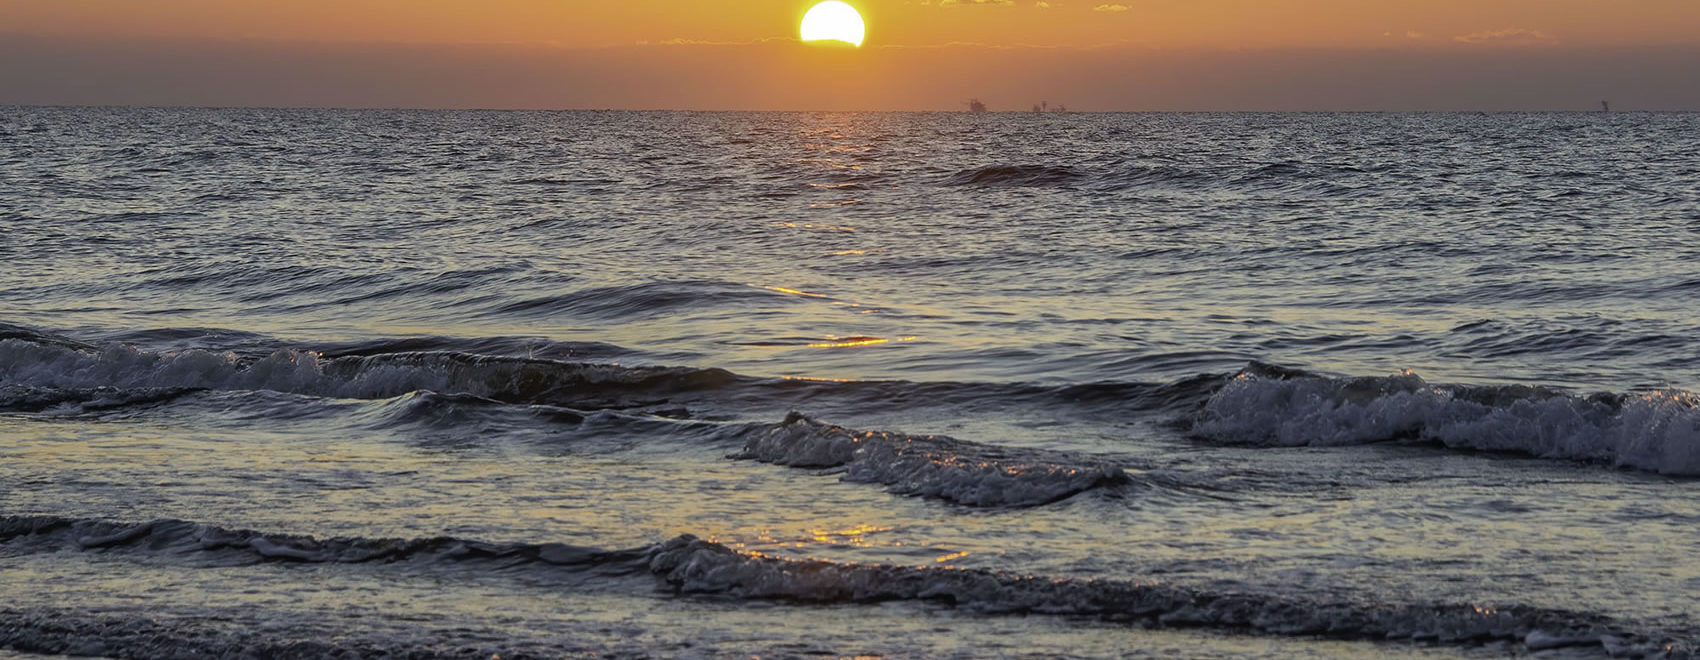 sunrise over Grand Isle, Louisiana